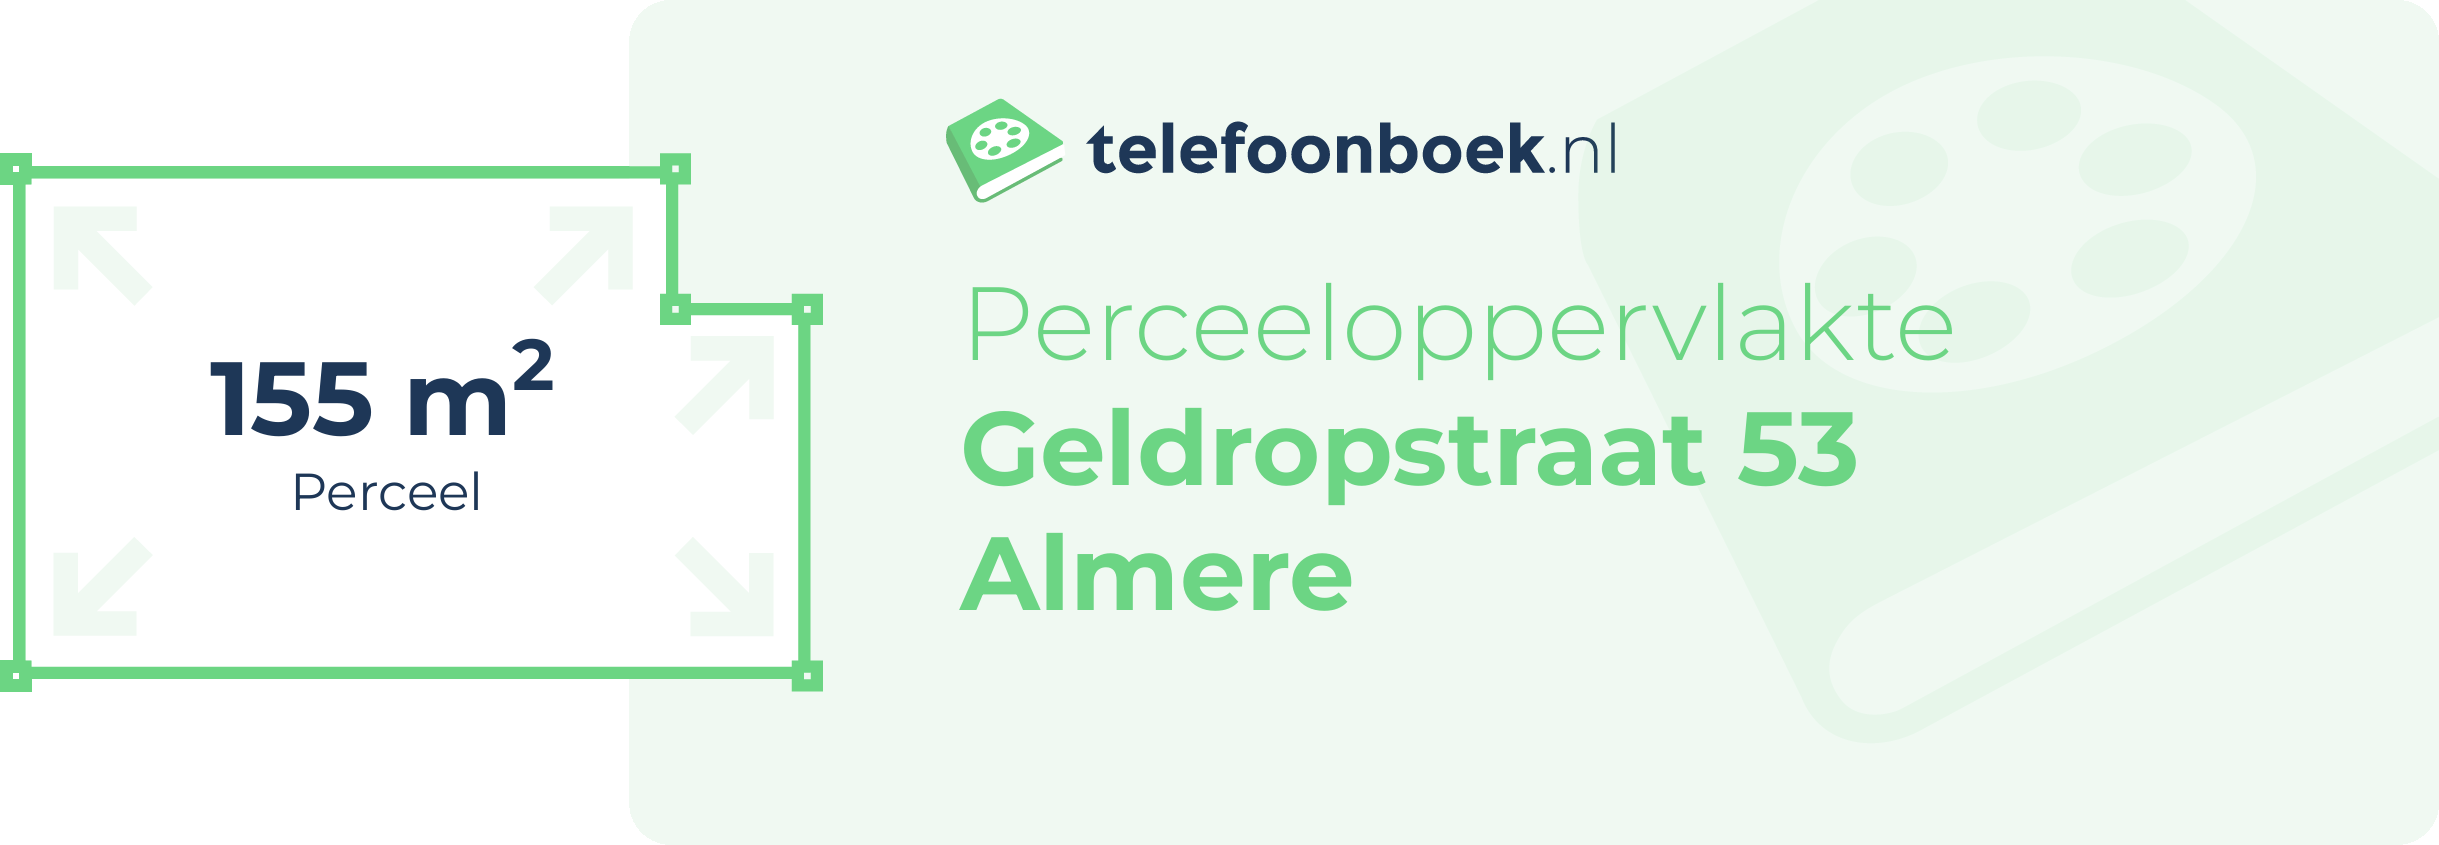 Perceeloppervlakte Geldropstraat 53 Almere